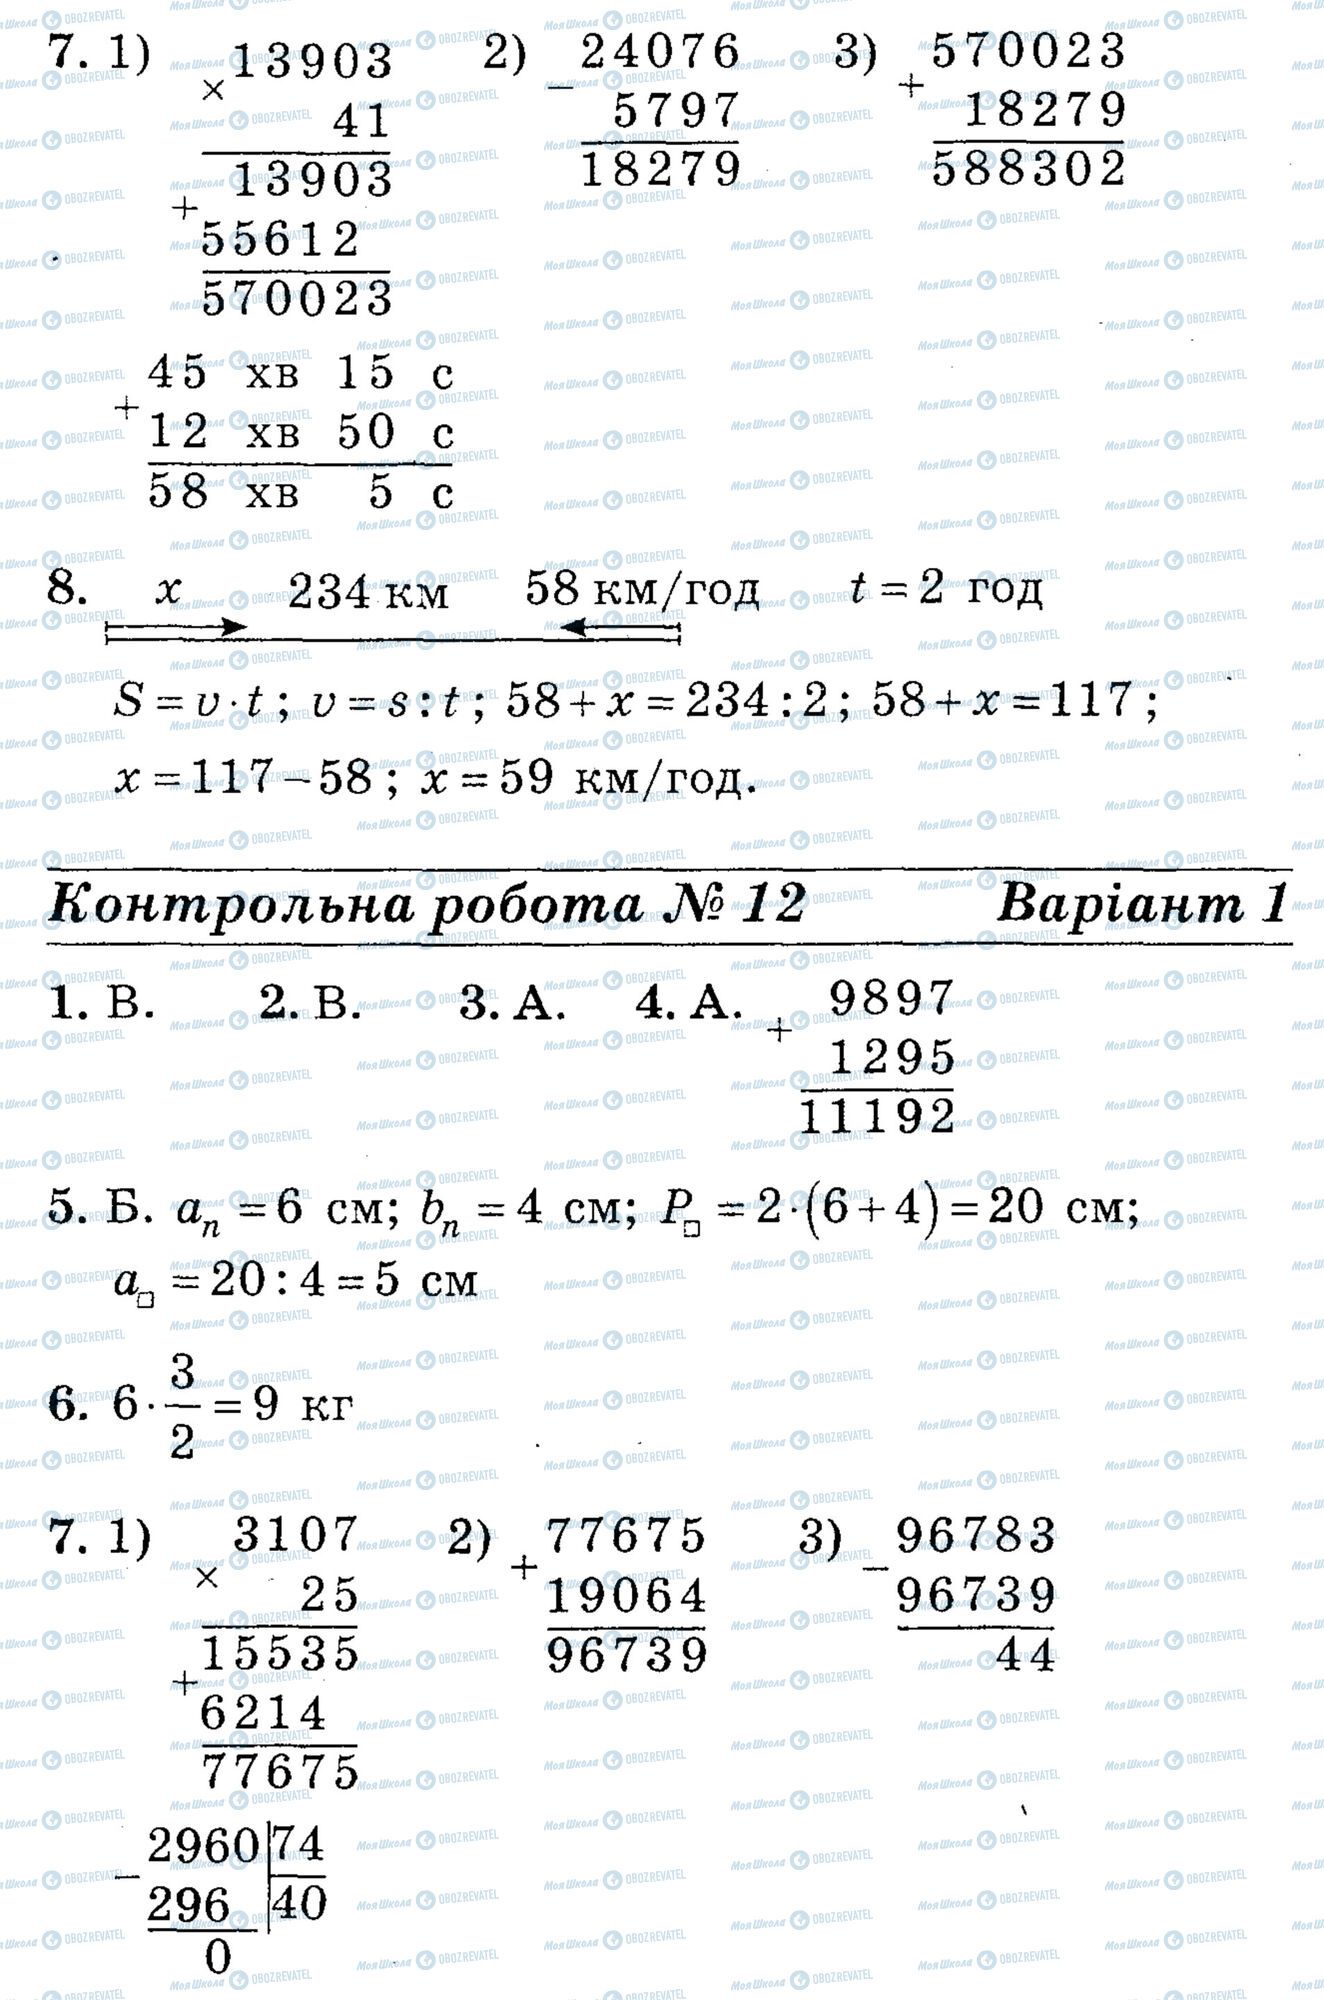 ДПА Математика 4 класс страница math-DPA-2013-4kl-K12-7